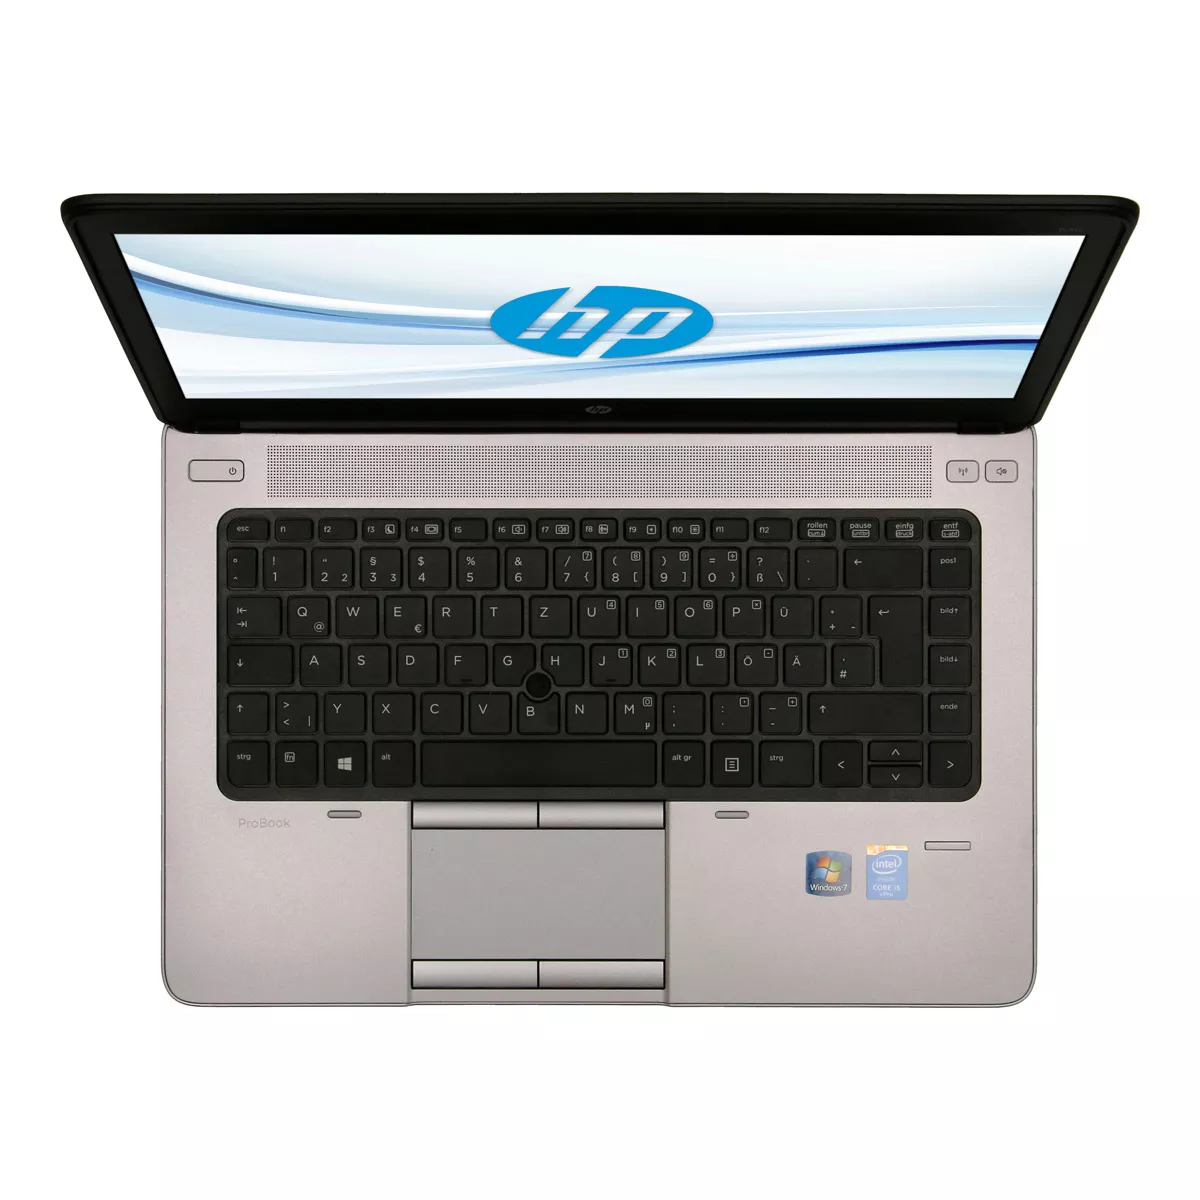 HP ProBook 640 G1 Core i5 4310M 500 GB HDD Webcam A